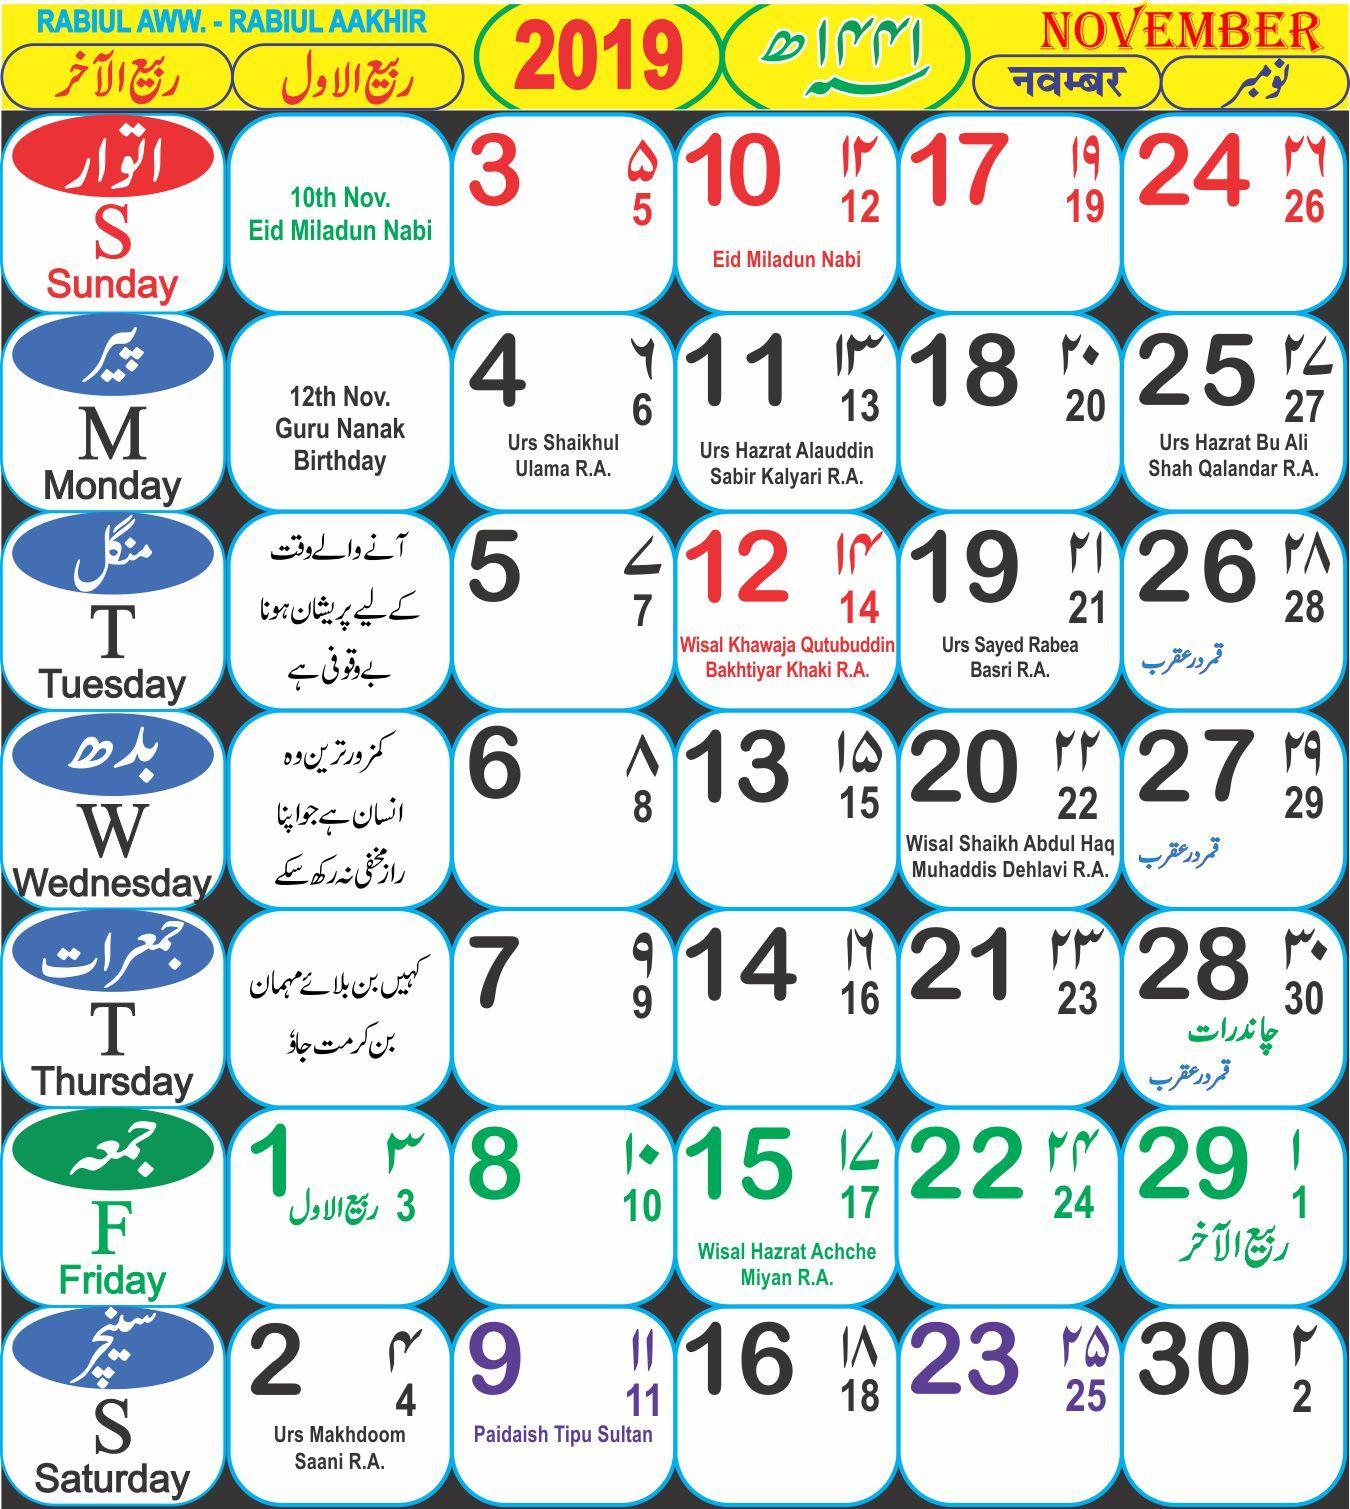 Показать мусульманский календарь. Исламский календарь. Месяцы по мусульманскому календарю. Календарь Ислама. Название месяцев по мусульманскому календарю.